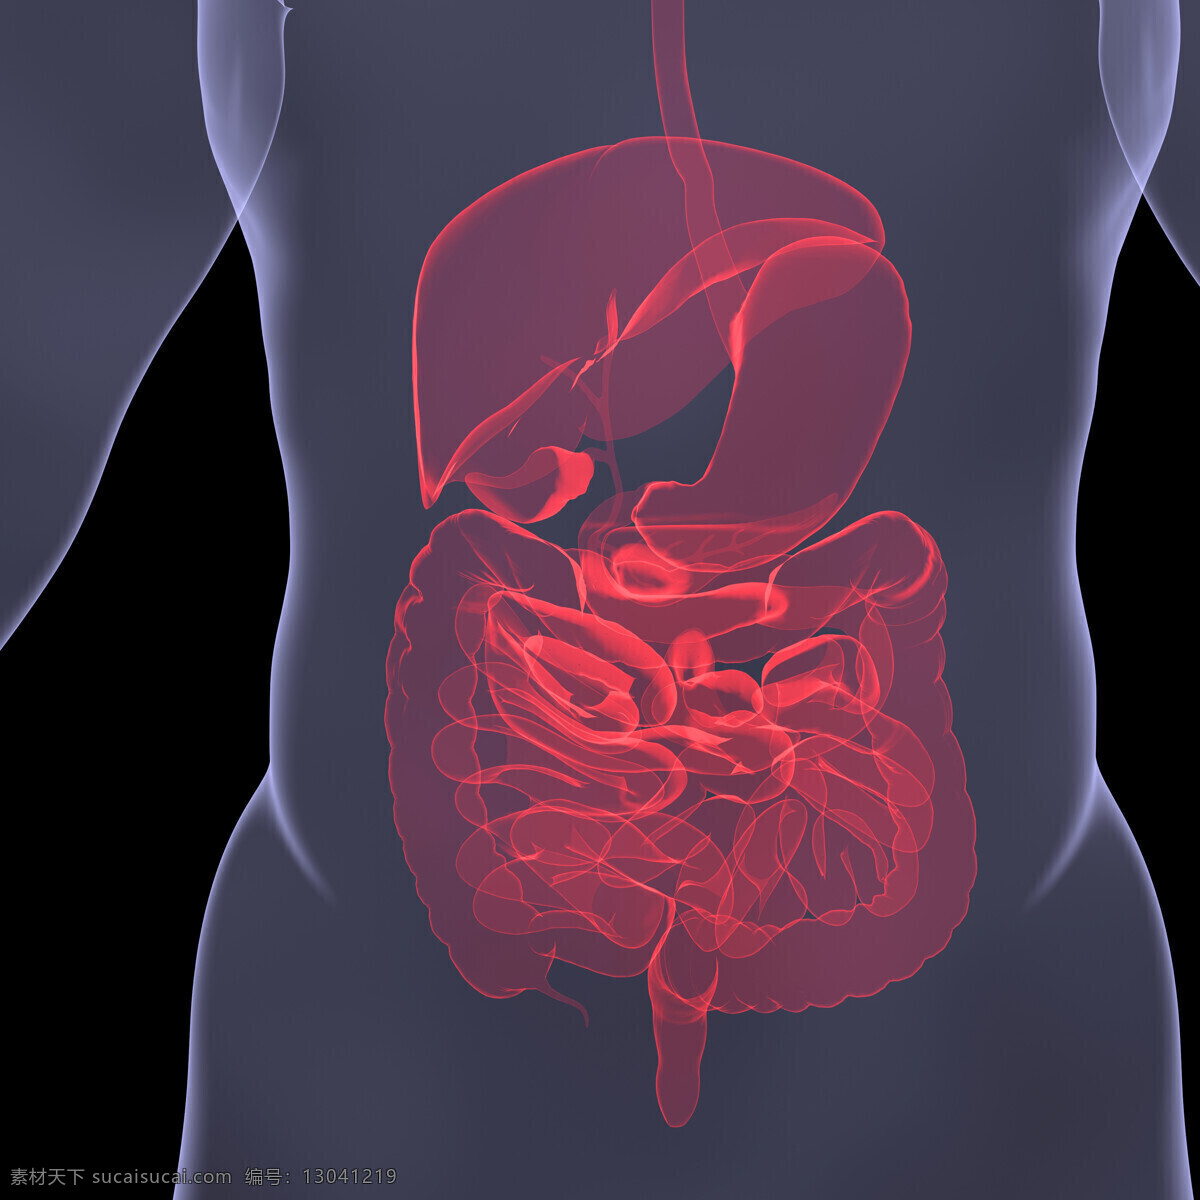 人体 内脏 器官 肠道 肝脏 人体模型 人体结构 人体器官 医学 生物 人体器官图 人物图片